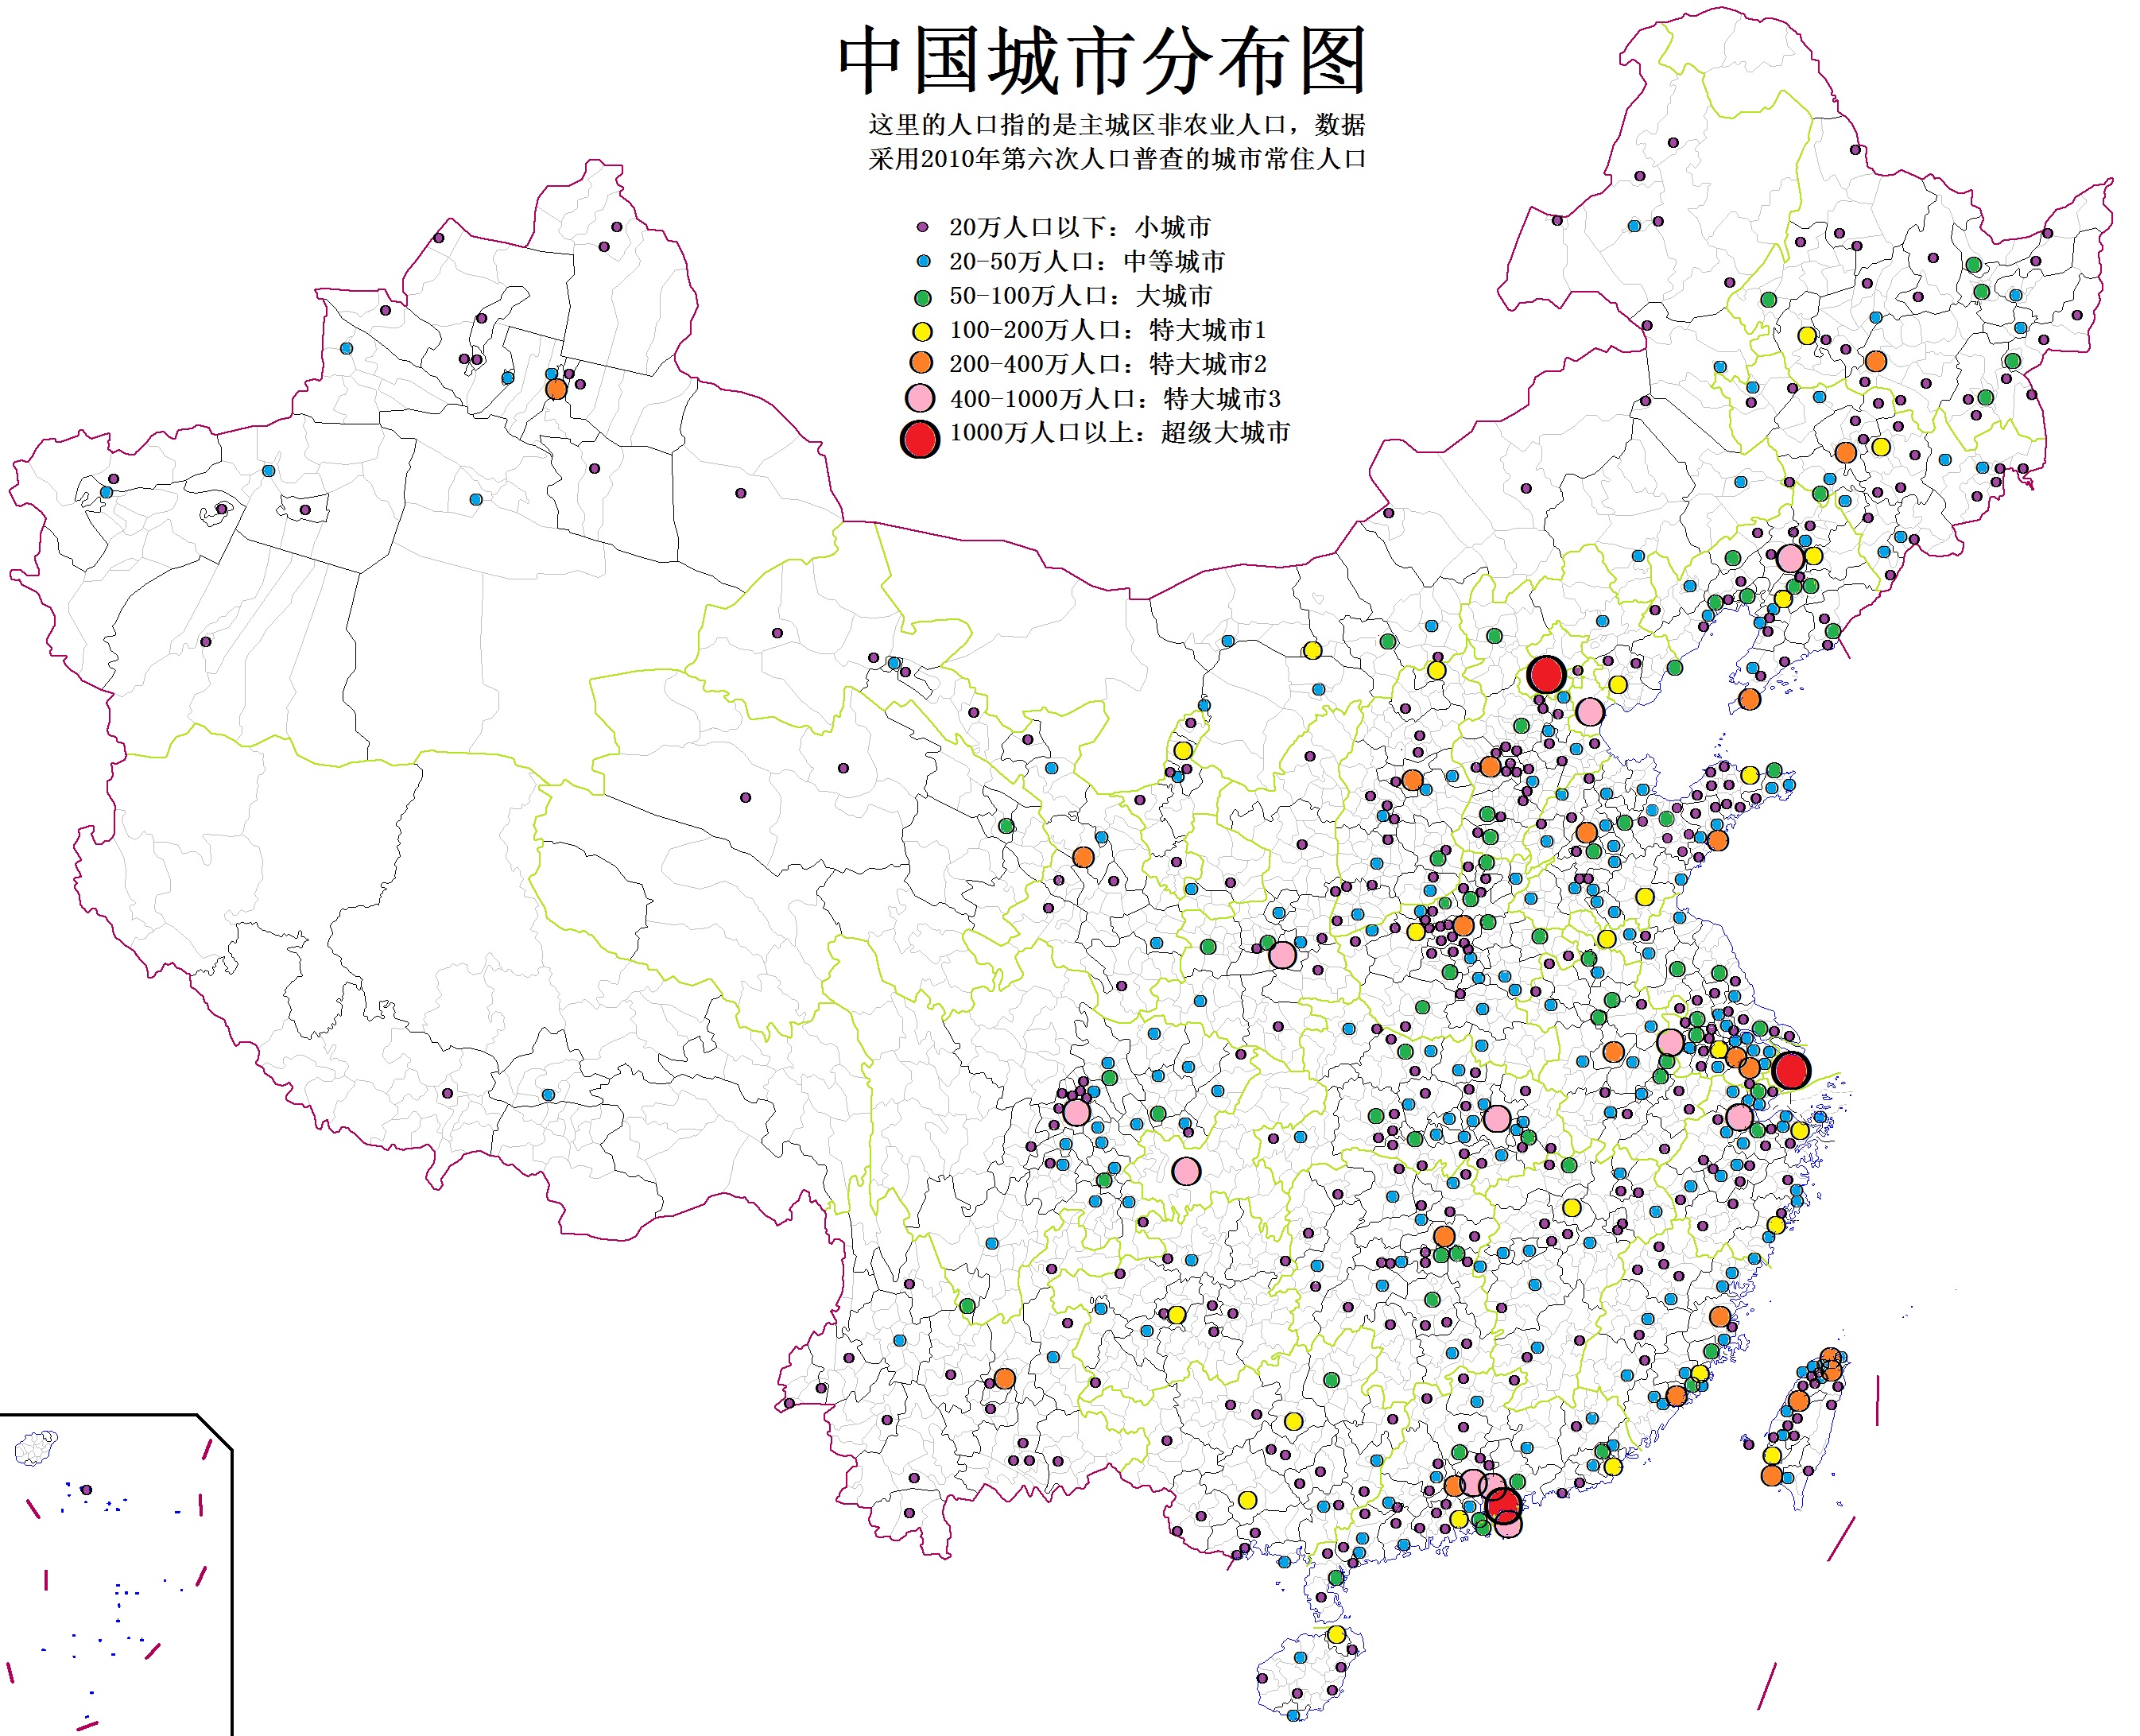 乡镇街道的城镇人口 数据来源: 1,各城市第六次人口普查数据 2,中国